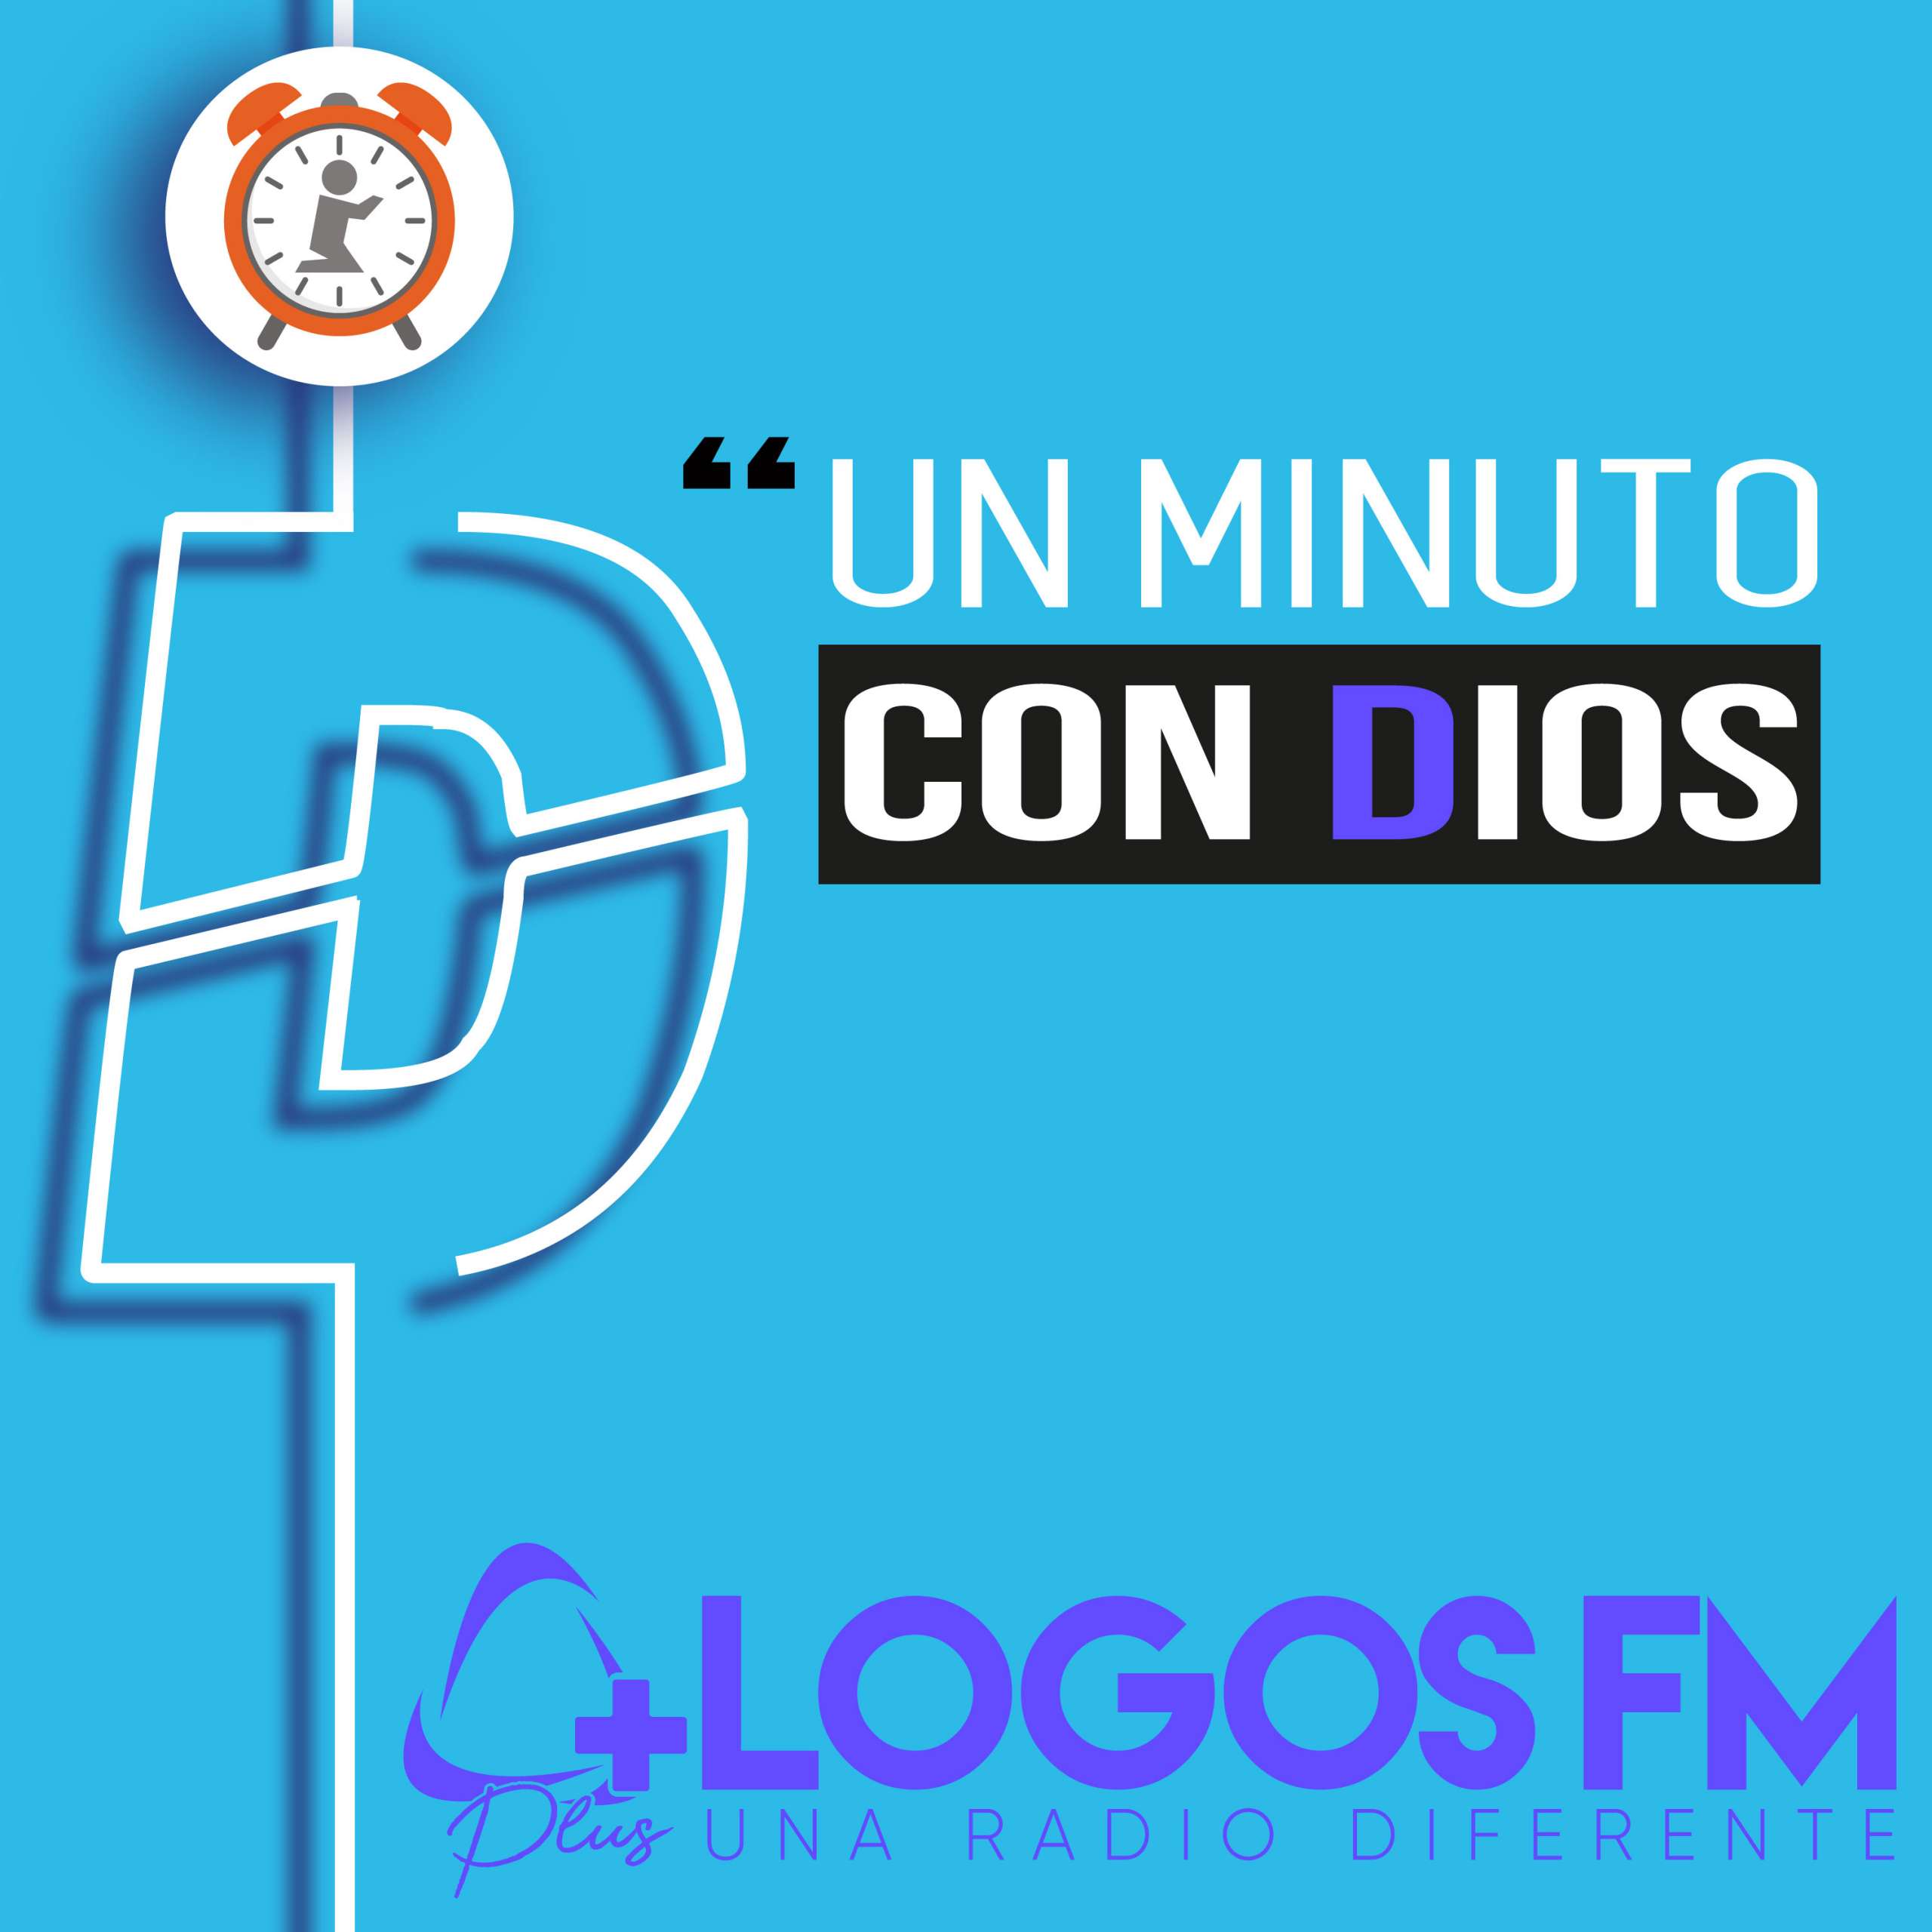 Un minuto con Dios - Episodio 442 - Oniss García